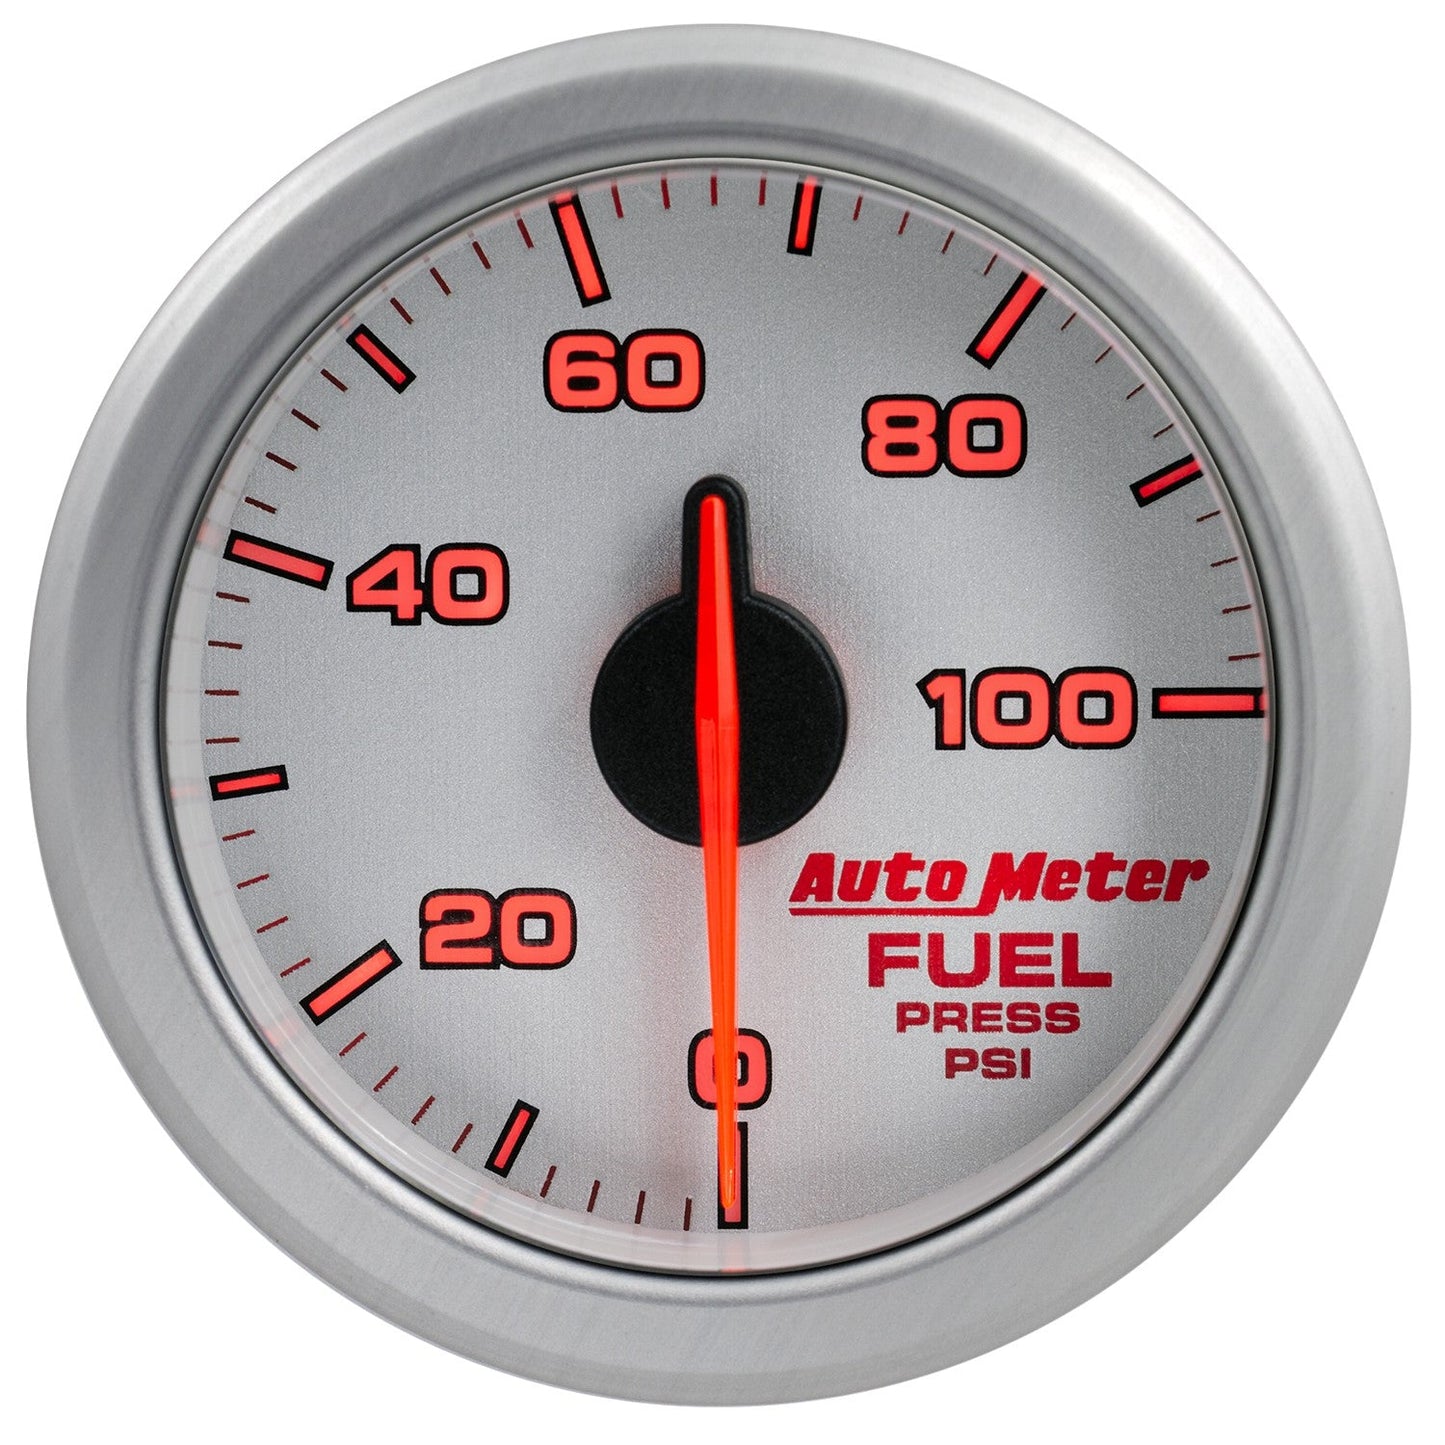 AutoMeter - PRENSA DE COMBUSTIBLE DE 2-1/16", 0-100 PSI, NÚCLEO DE AIRE, ACCIONAMIENTO POR AIRE, PLATA (9171-UL) 